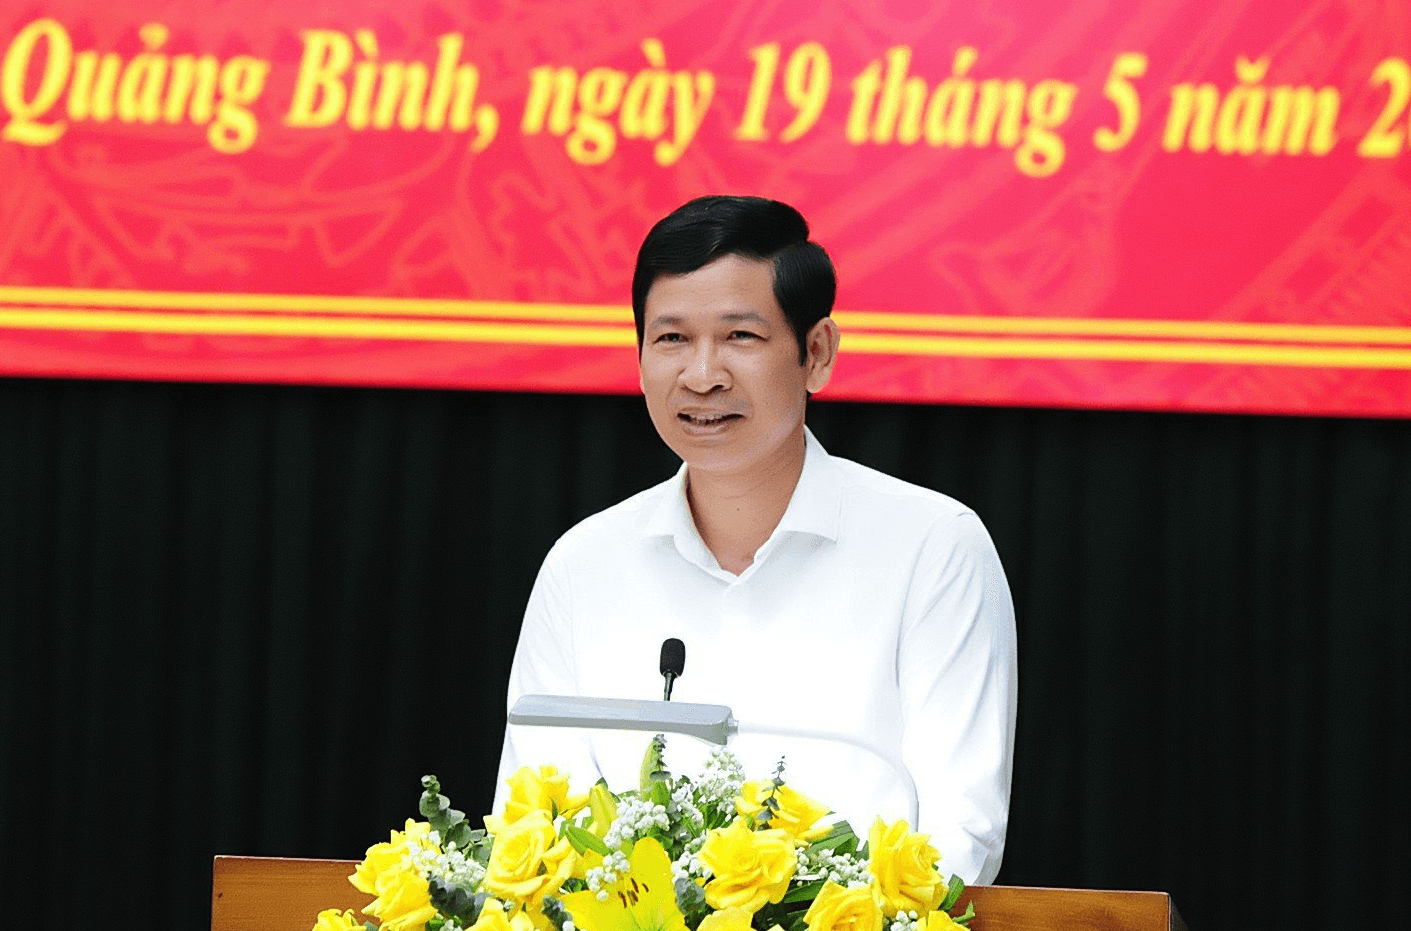 Phó Chủ tịch UBND tỉnh Quảng Bình được bổ nhiệm giữ chức Thứ trưởng Bộ Văn hóa, Thể thao và Du lịch- Ảnh 1.